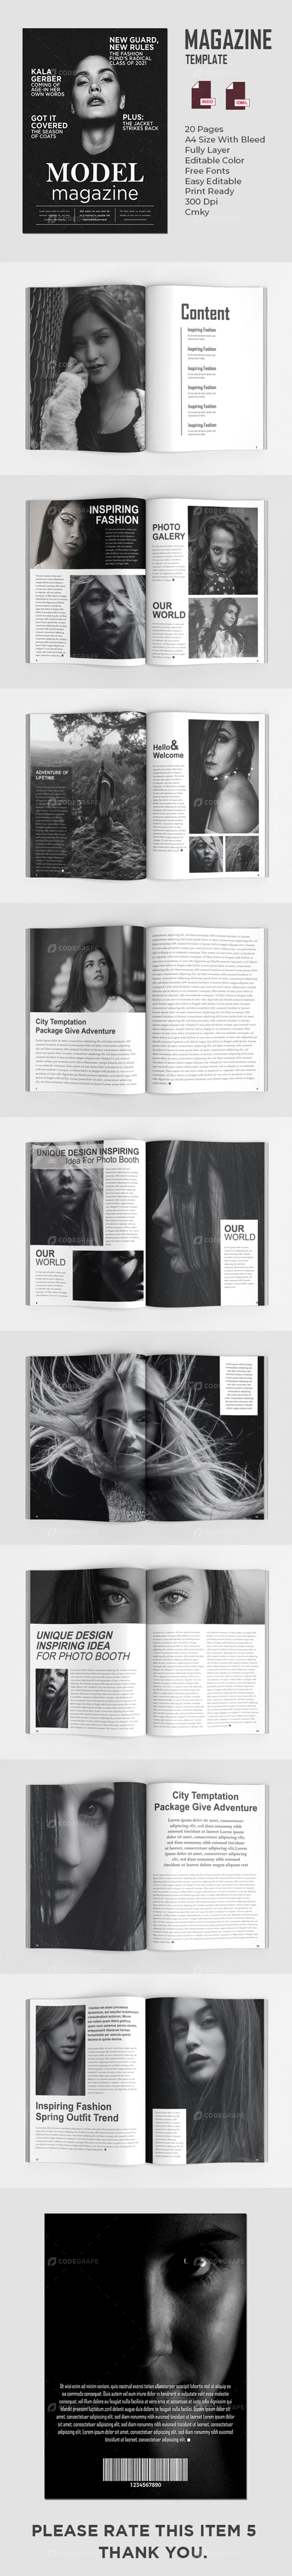 Modeling Magazines